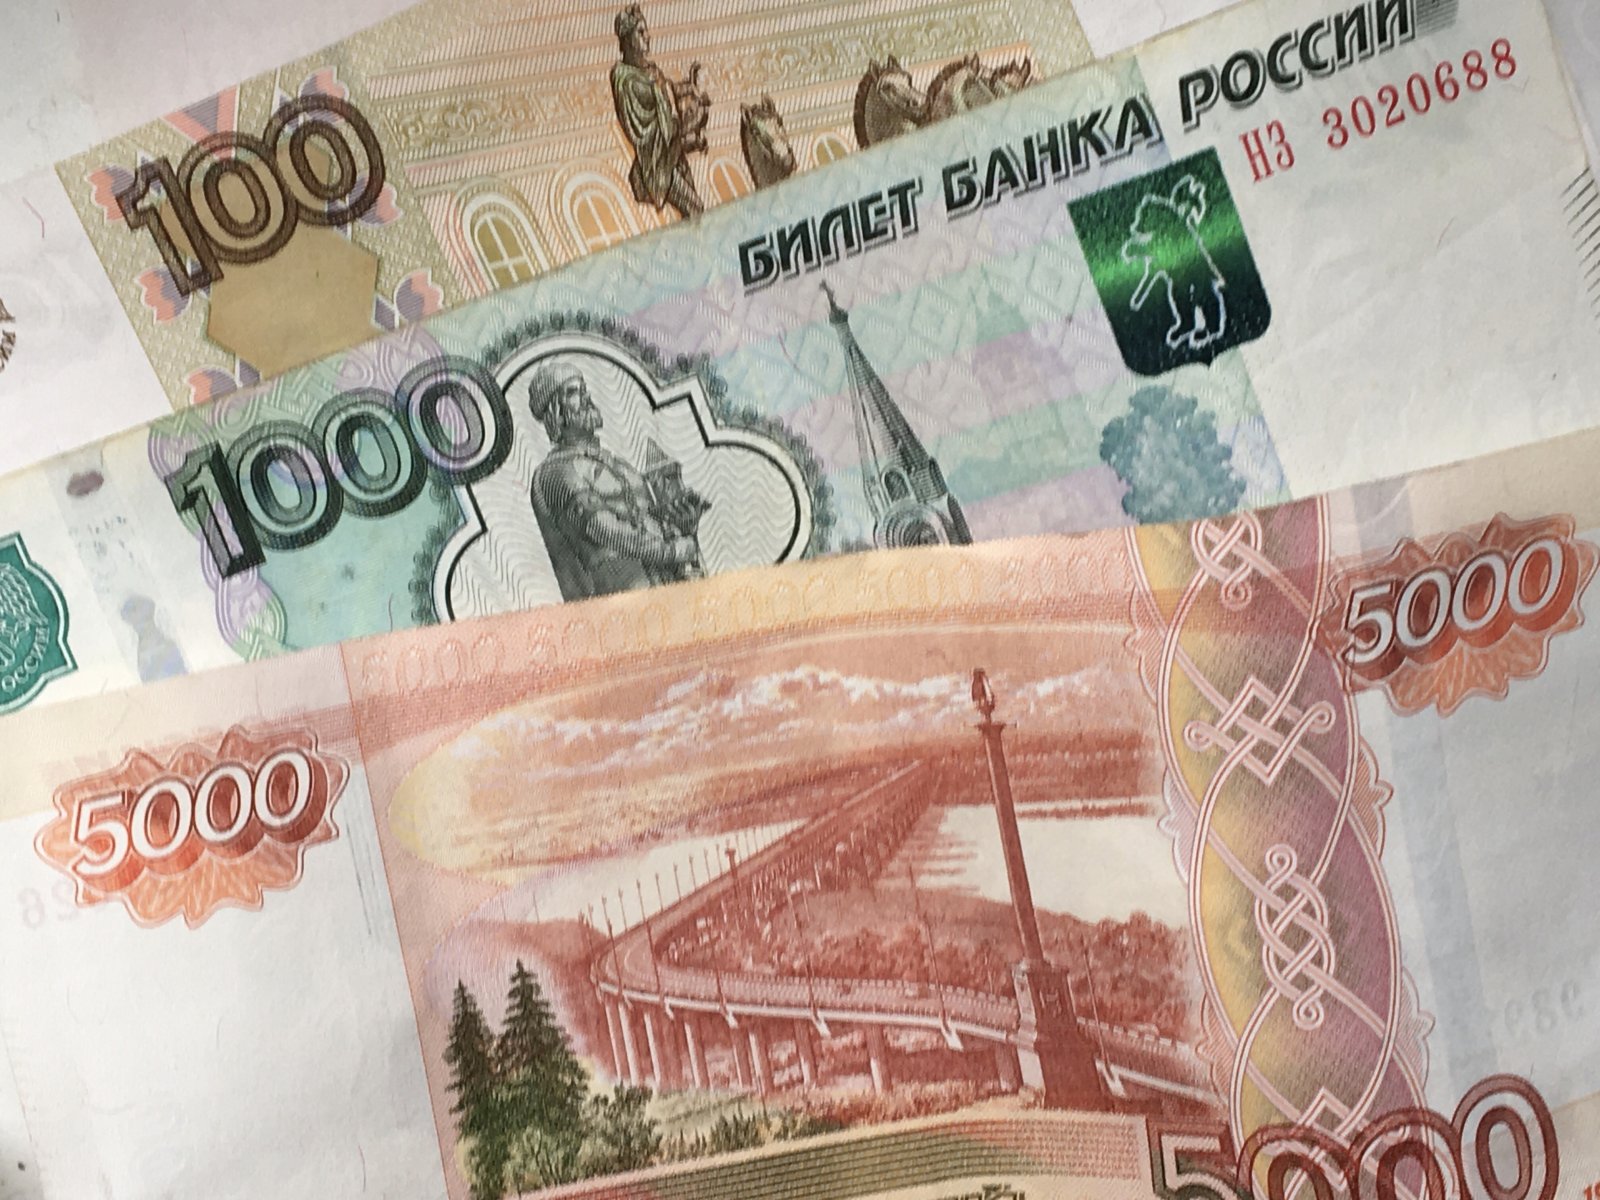 Фейковый сотрудник банка выманил у пожилой москвички почти 8 млн рублей 